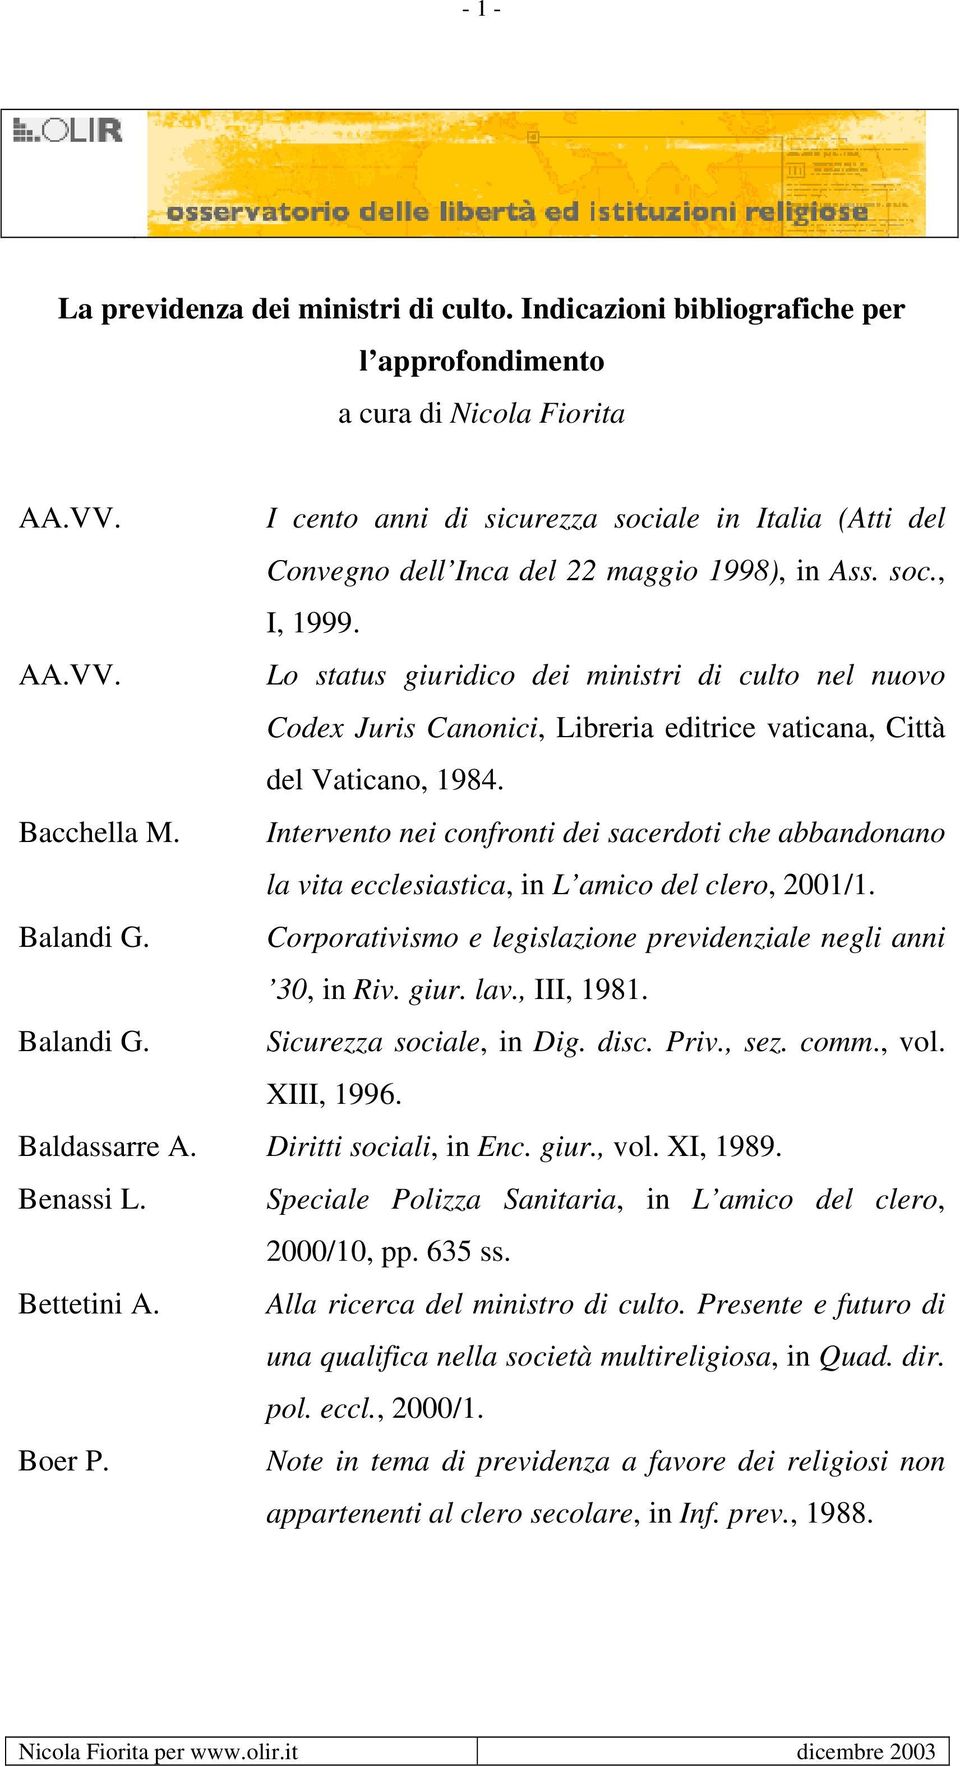 Lo status giuridico dei ministri di culto nel nuovo Codex Juris Canonici, Libreria editrice vaticana, Città del Vaticano, 1984. Bacchella M.